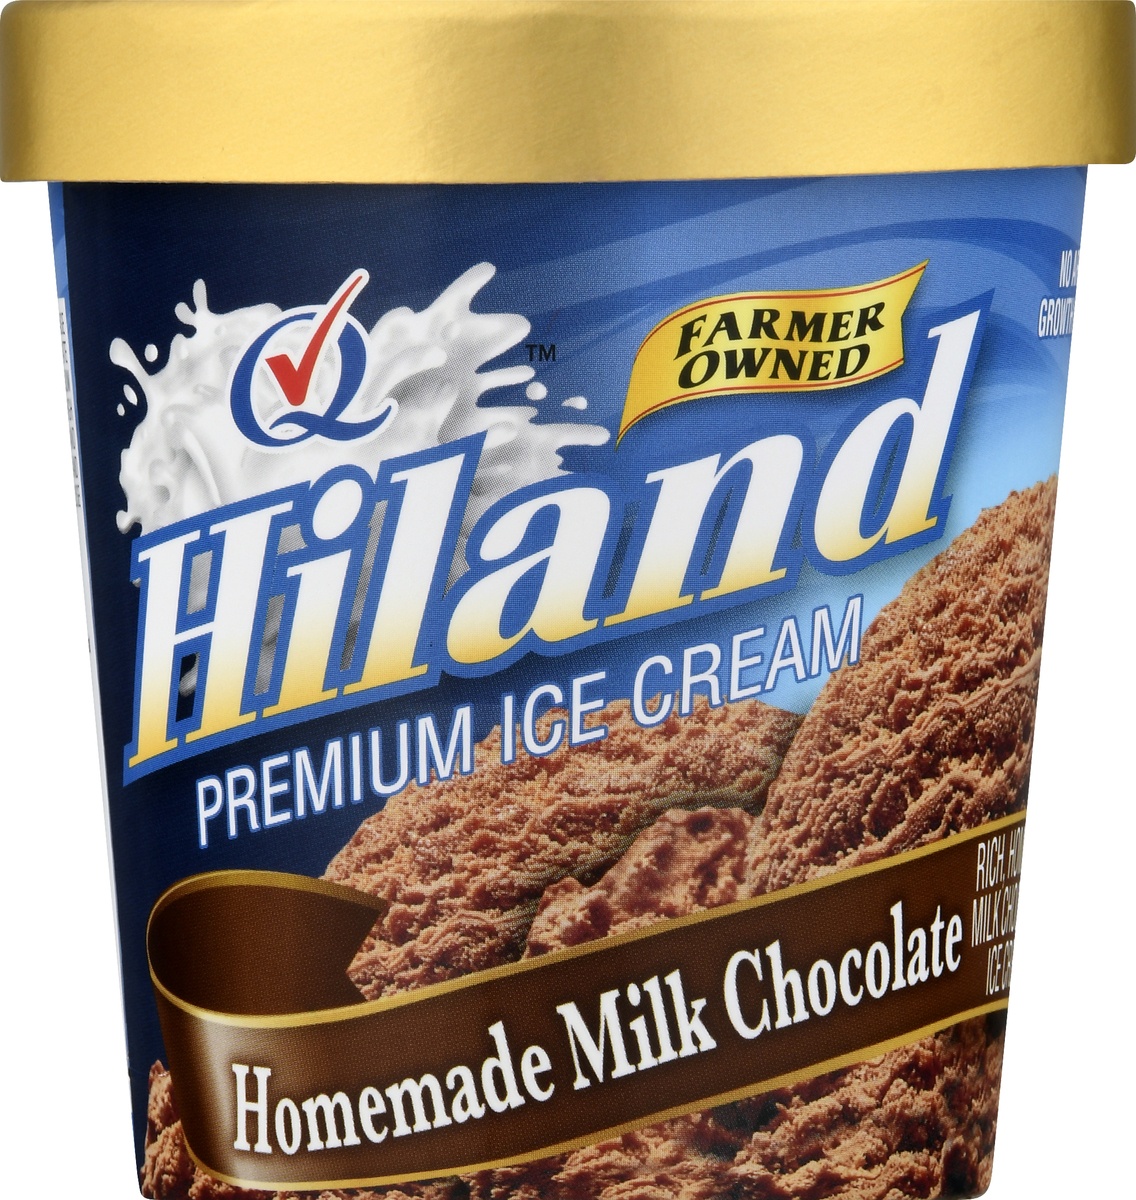 slide 9 of 10, Hiland Dairy Premium Ice Cream Homemade Milk Chocolate, 1 pint